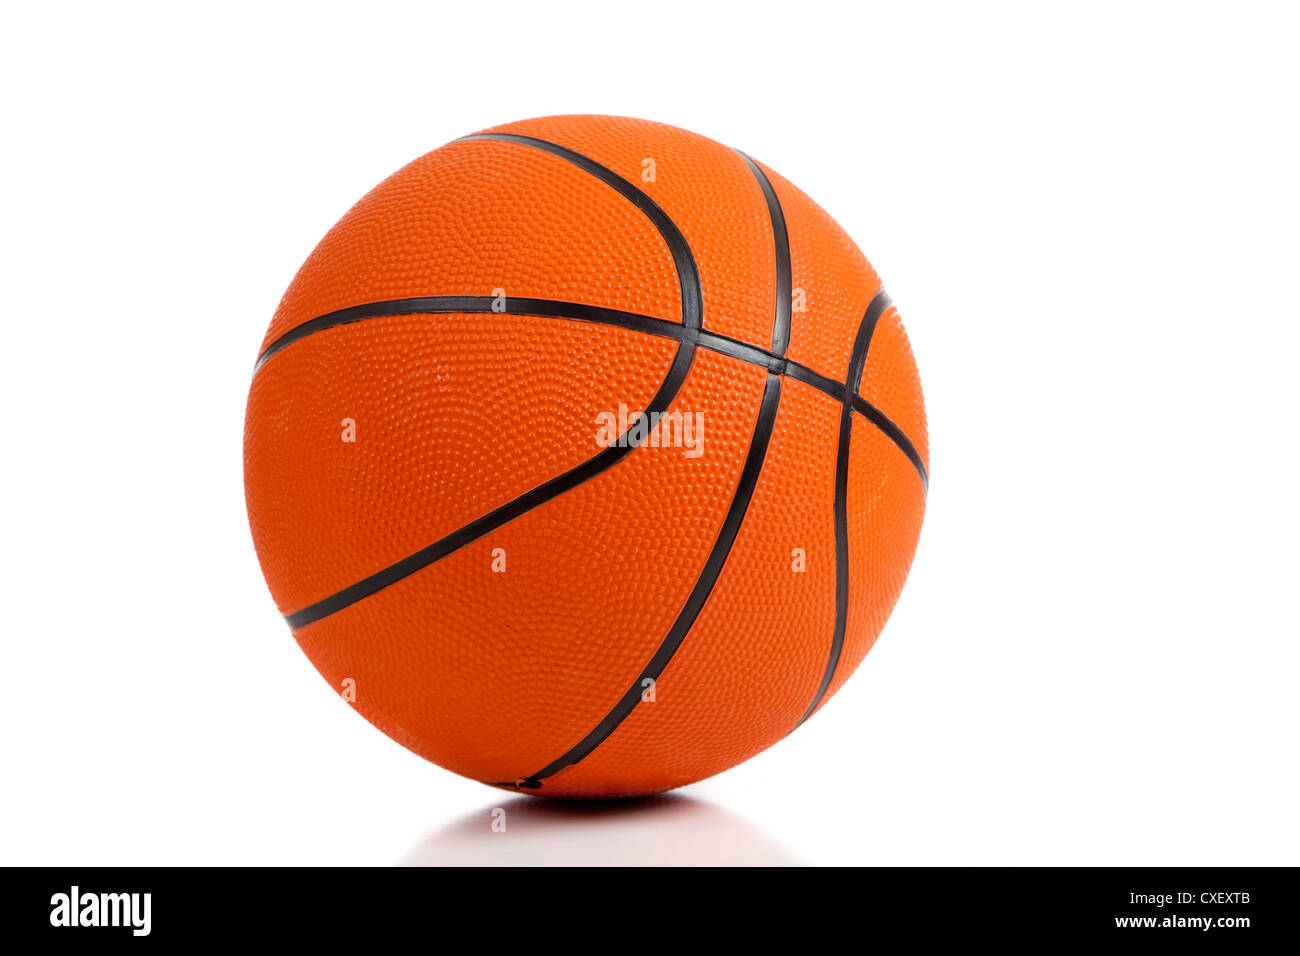 Basket-ball sur un fond blanc Banque D'Images